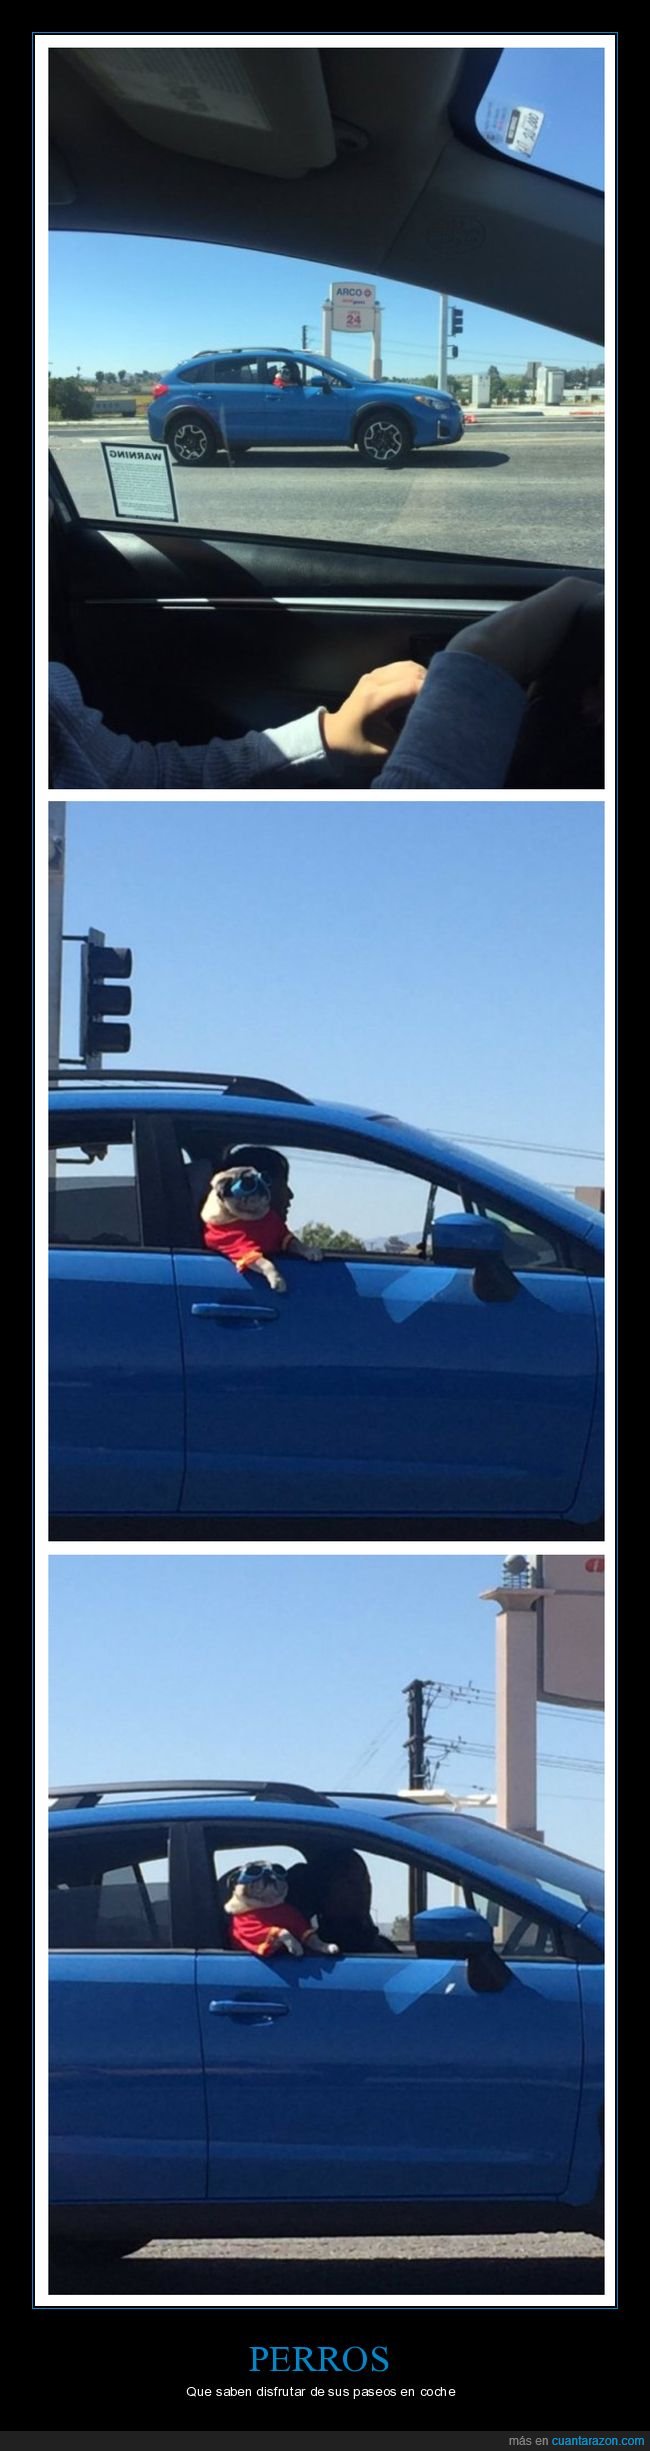 perro,carlino,gafas,coche